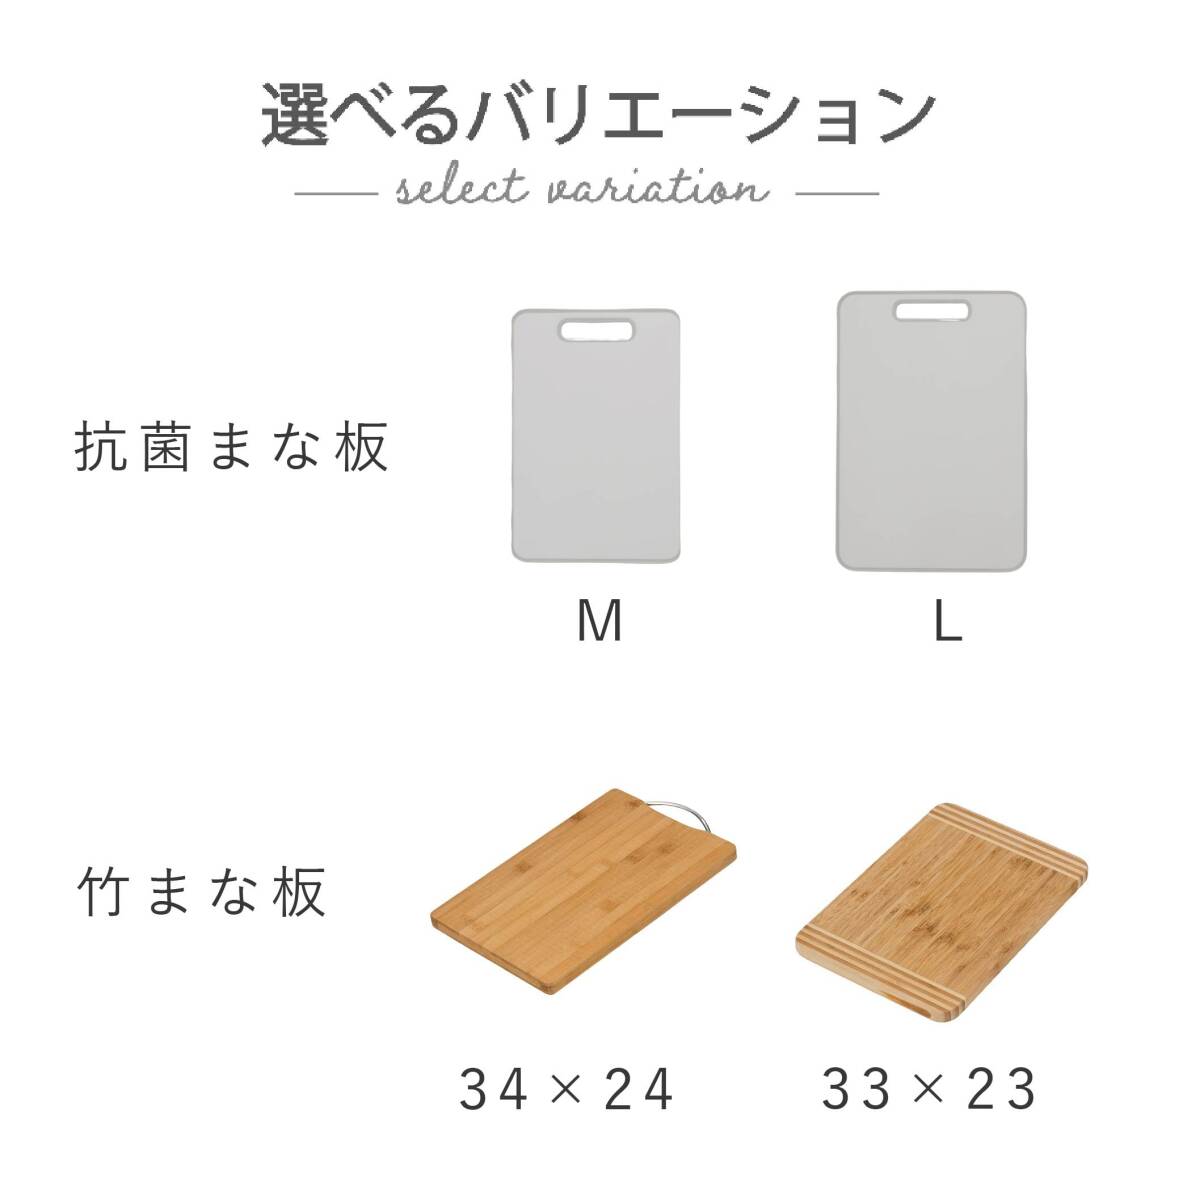 【まな板、カッティングボード、調理、耐熱抗菌】 武田コーポレーション(Takeda corporation) ホワイト/グレー 44.5×30._画像3